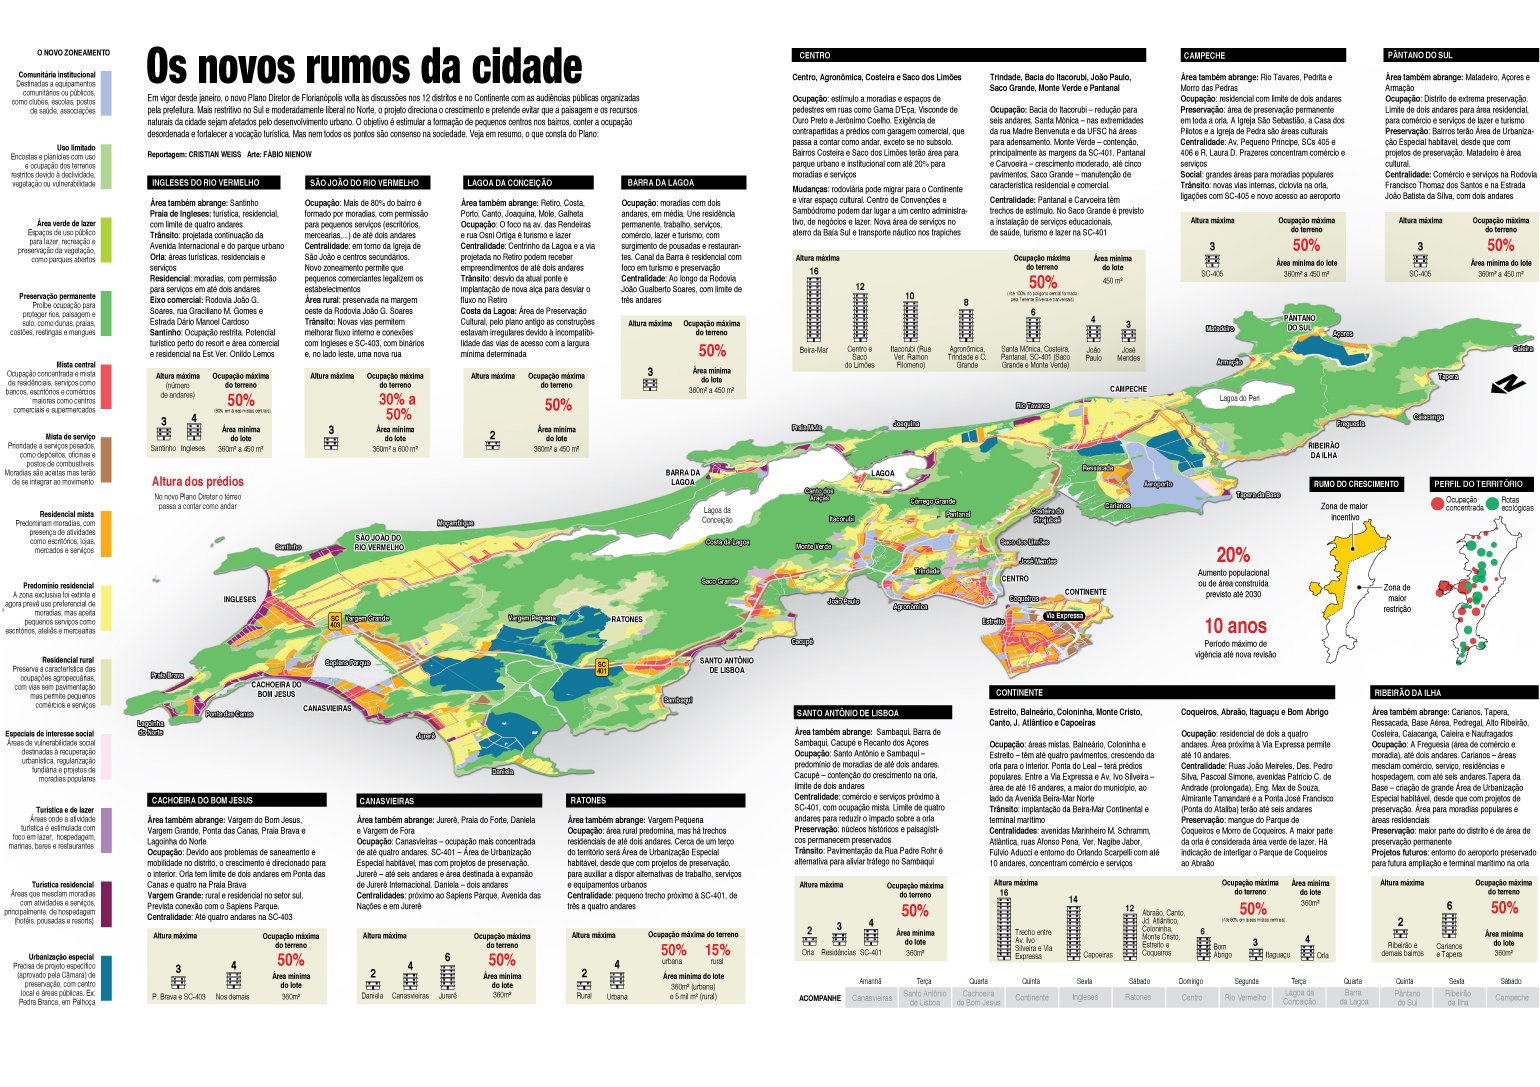 mapa plano diretor de Florianópolis futuro da cidade audiências públicas planejamento urbano estatuto da cidade cristian edel weiss jornalista de dados multimídia Diário Catarinense